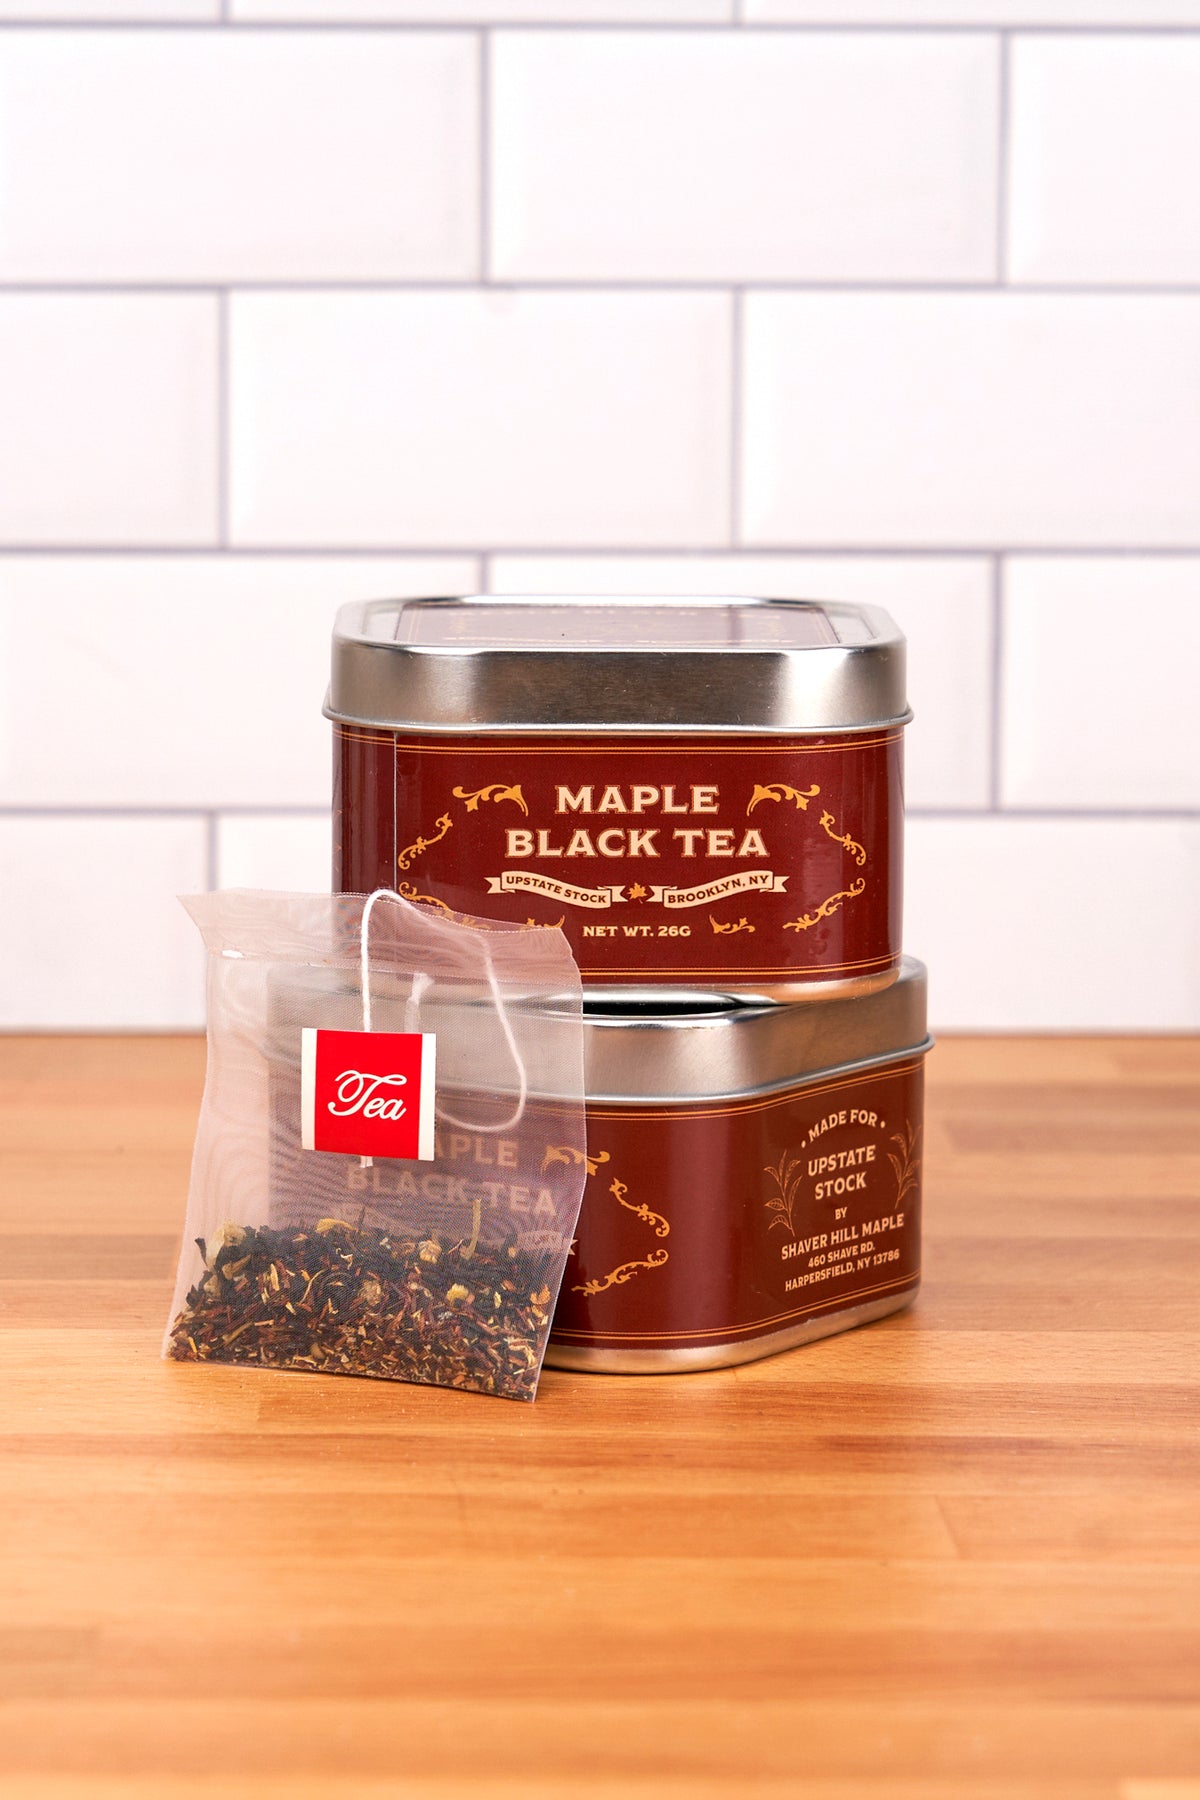 Upstate Stock Maple Tea BLACK